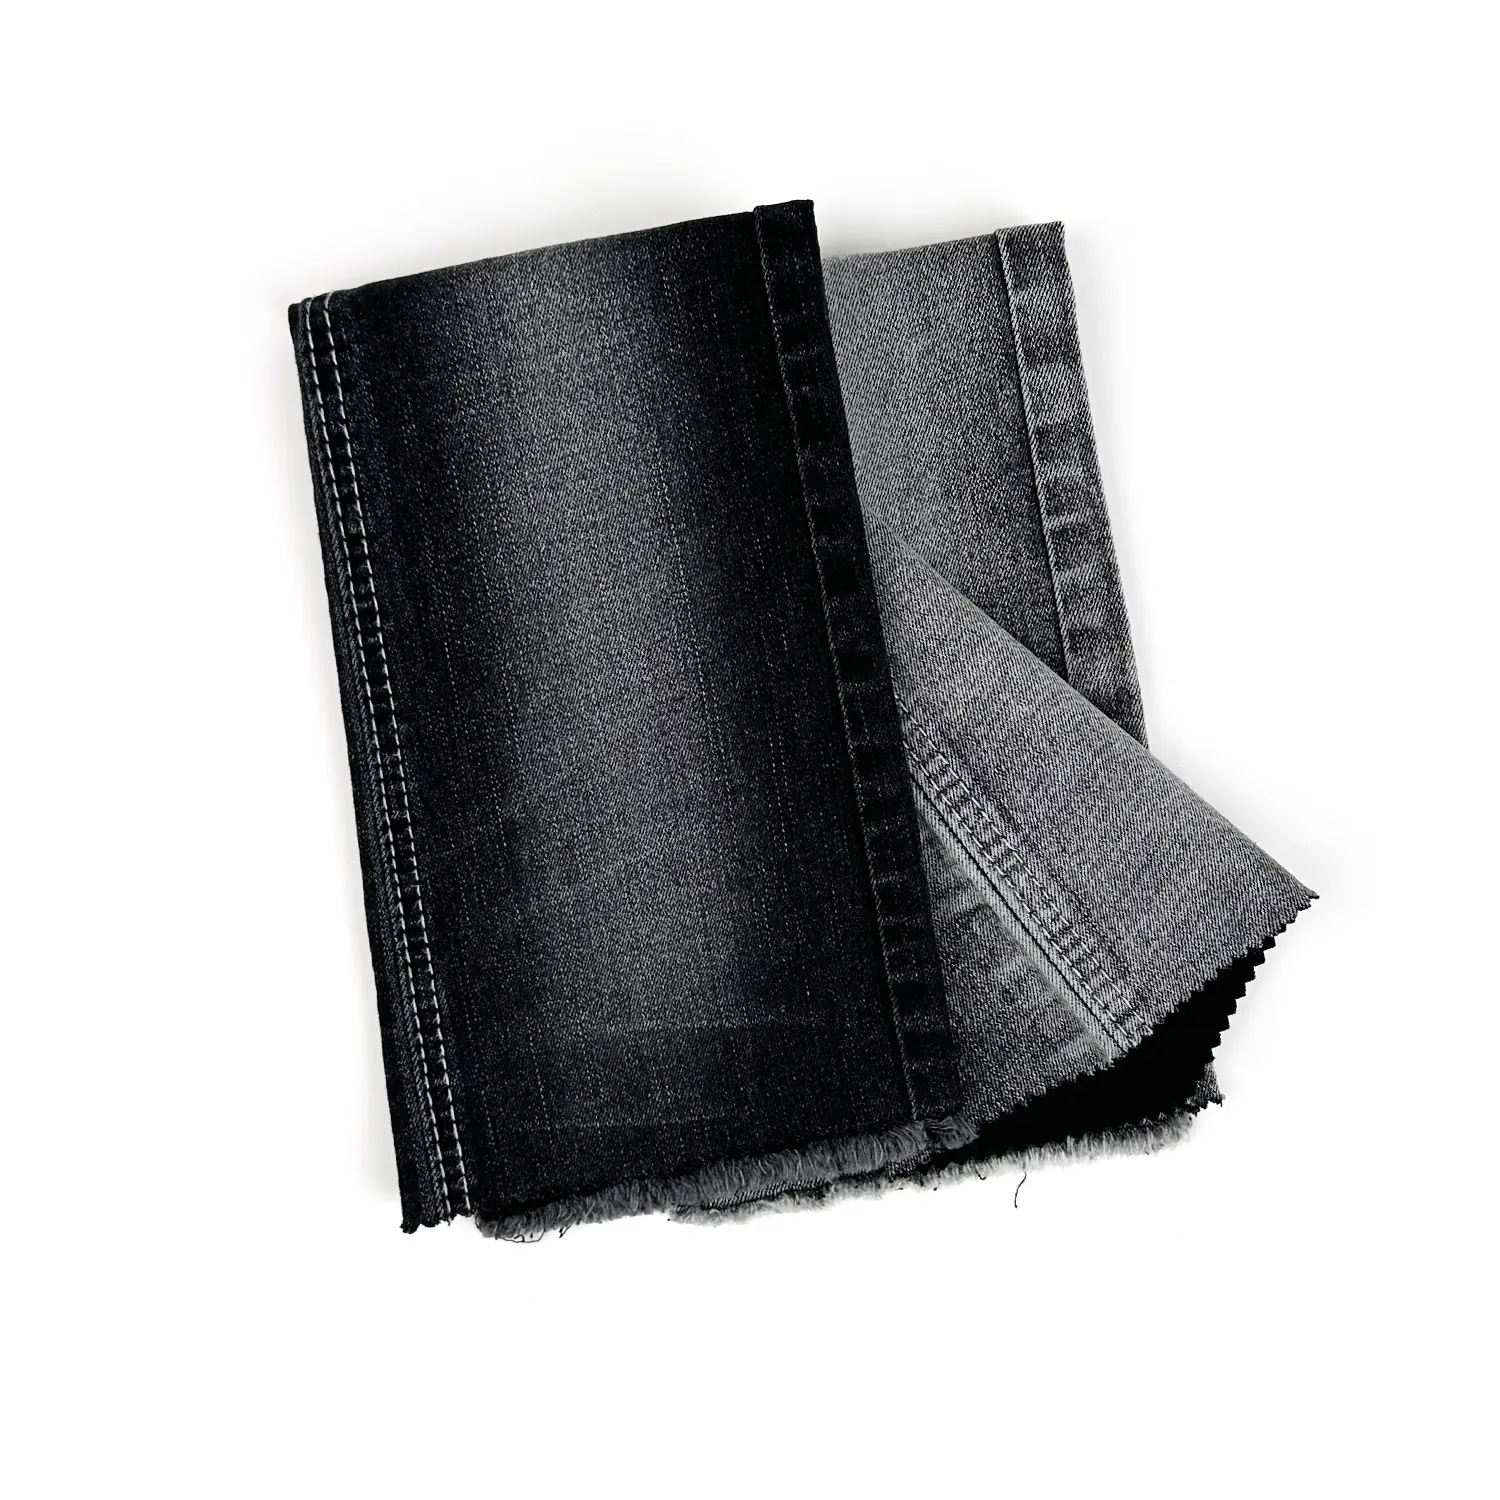 Stock 10s jeans tissu TR denim tissu noir visage noir botton jeans tissu avec flammé pour hommes denim fabricants avec vente en gros